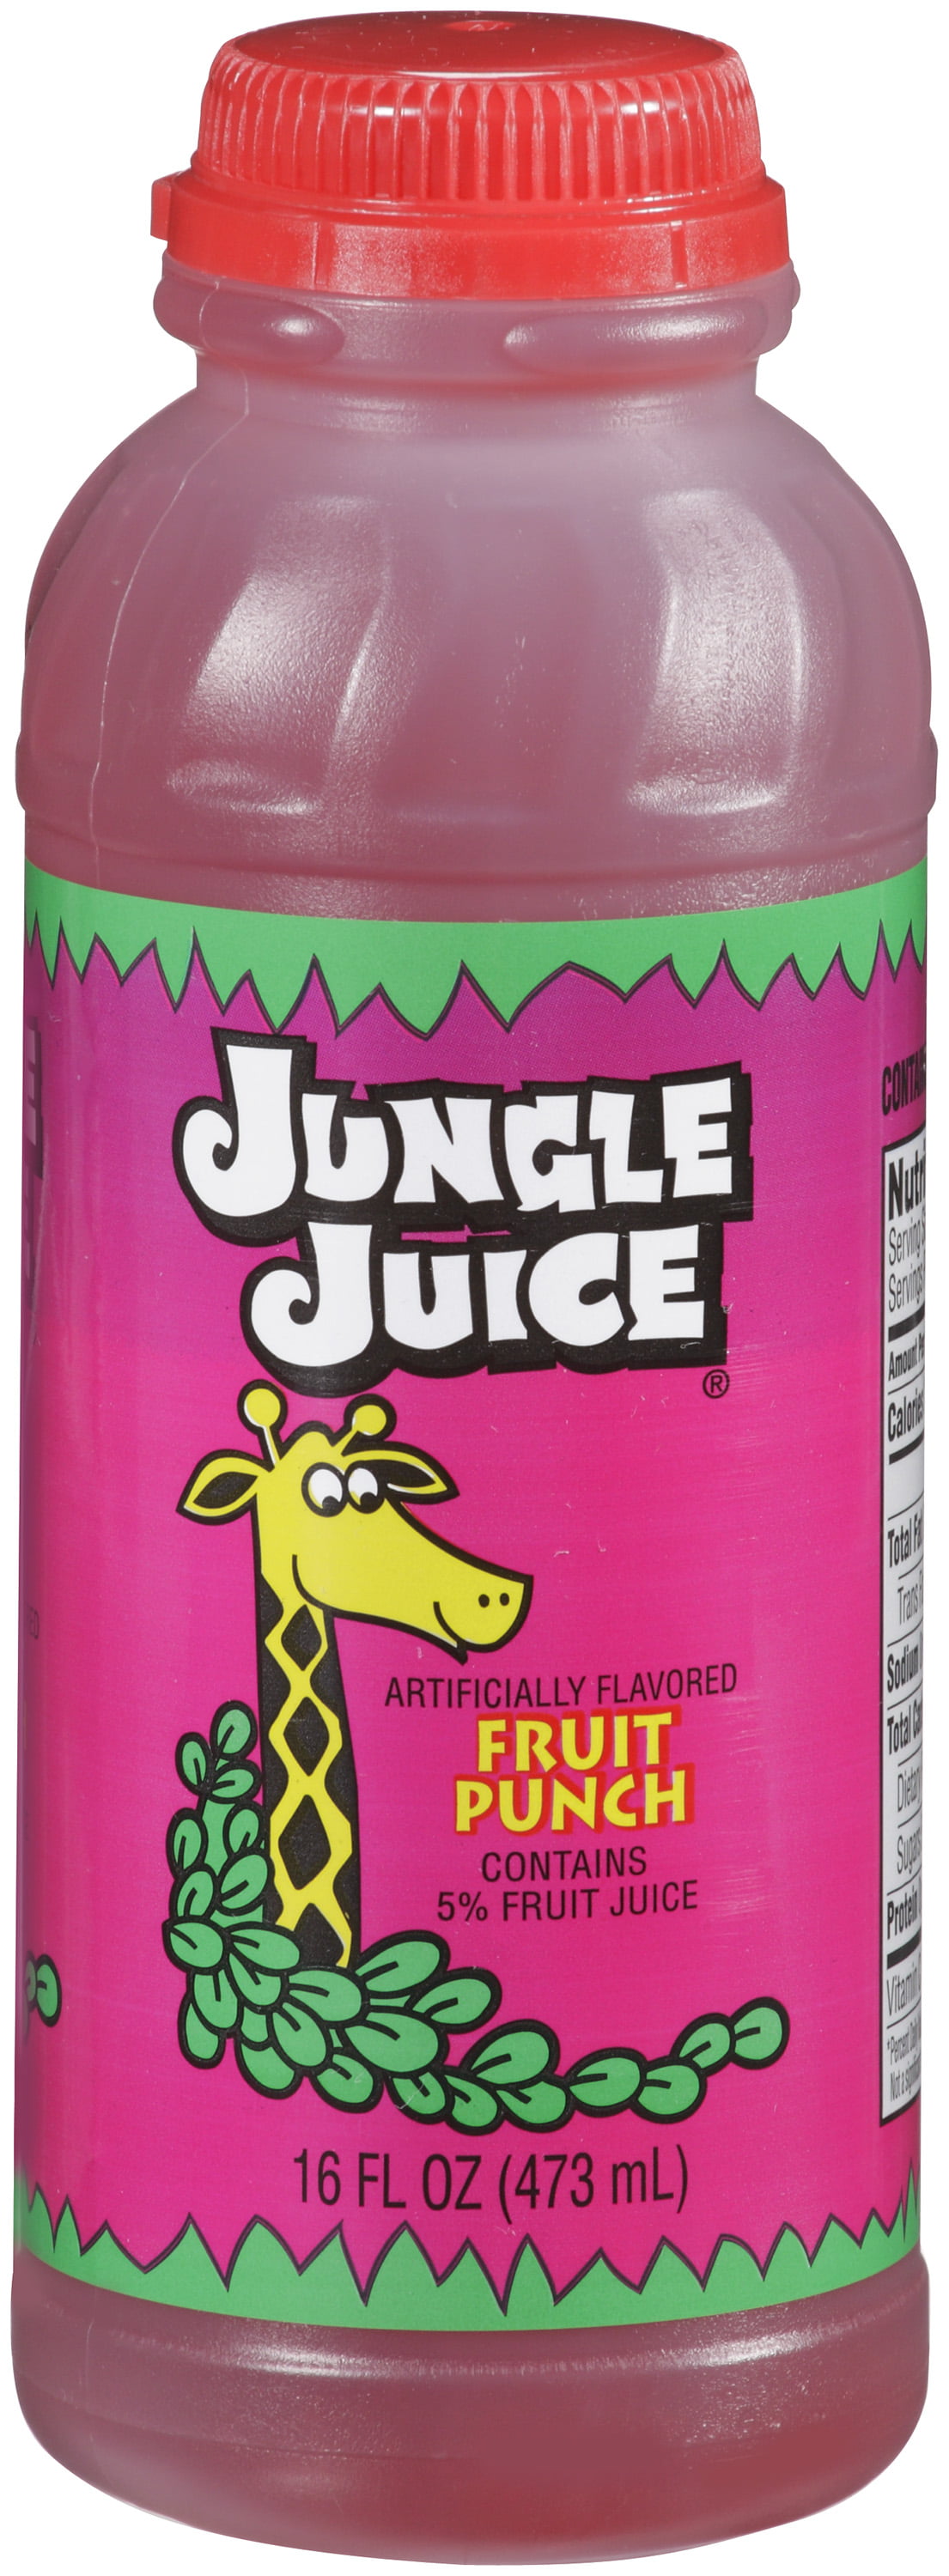 Джангл джус. Фруктовый пунш. Jungle Juice пунш. Джангл Джус 2007.